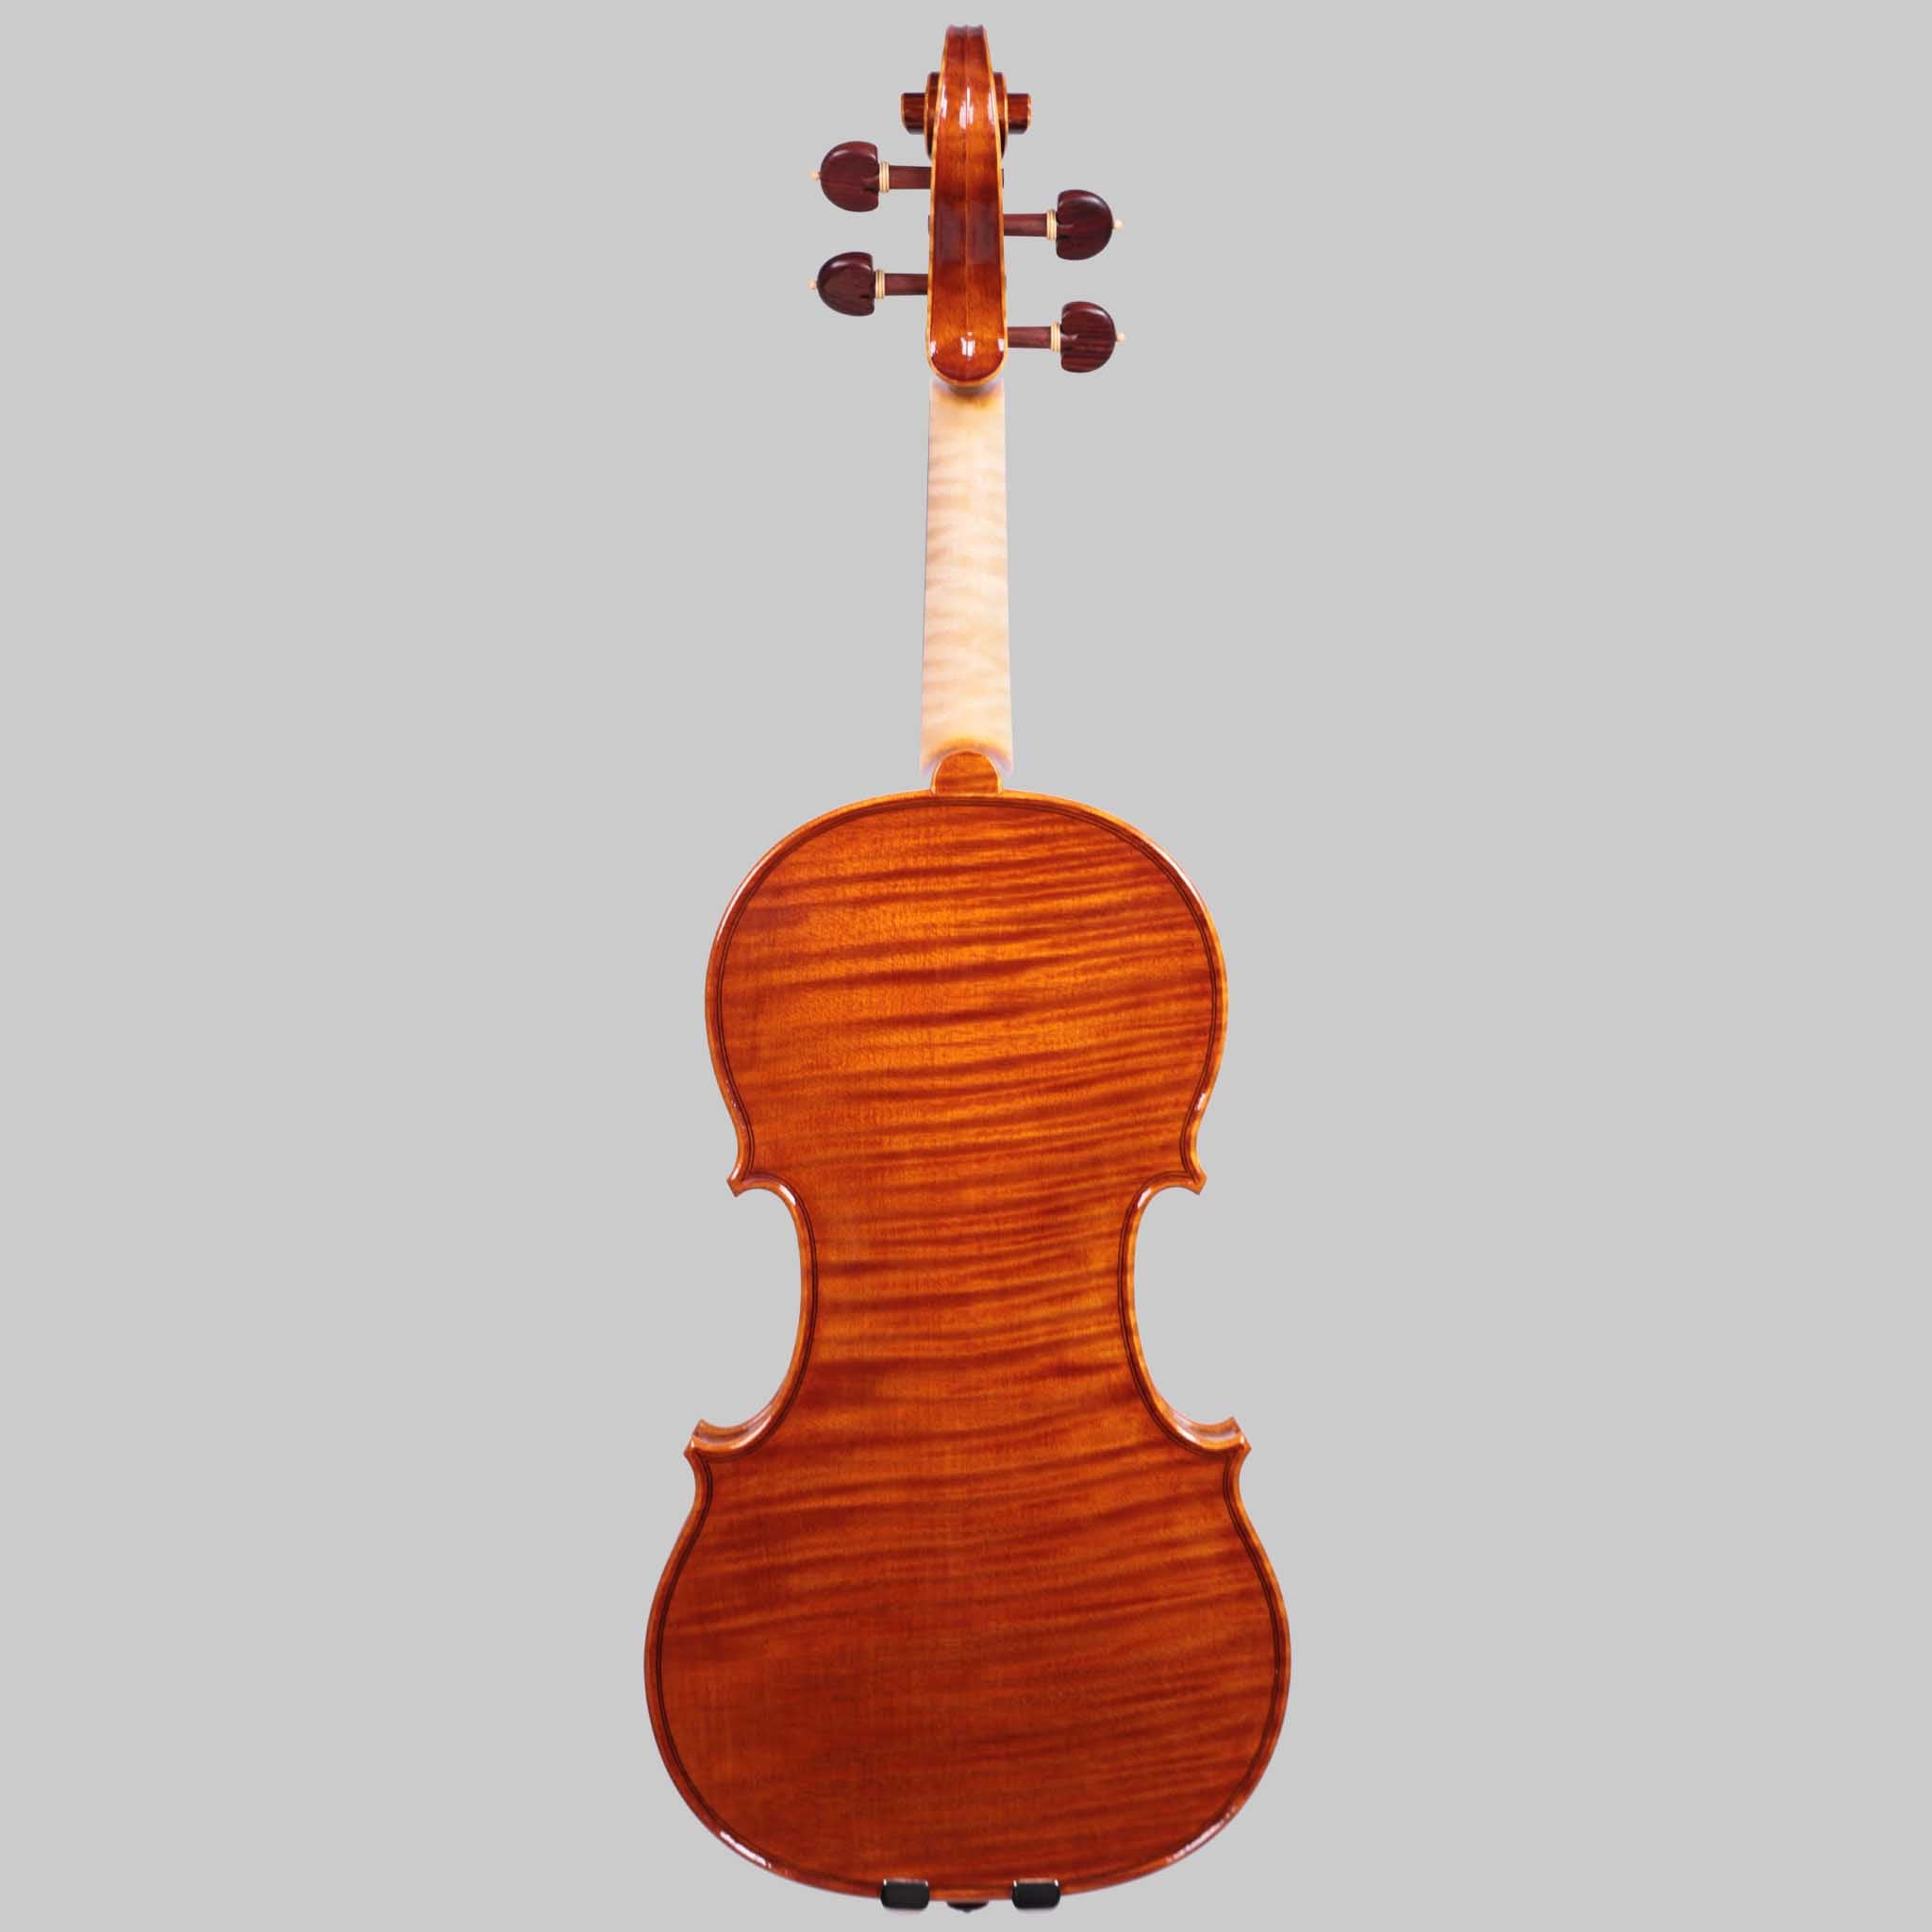 Marco Cargnelutti, Udine "Il Toscano" 2021 Violin